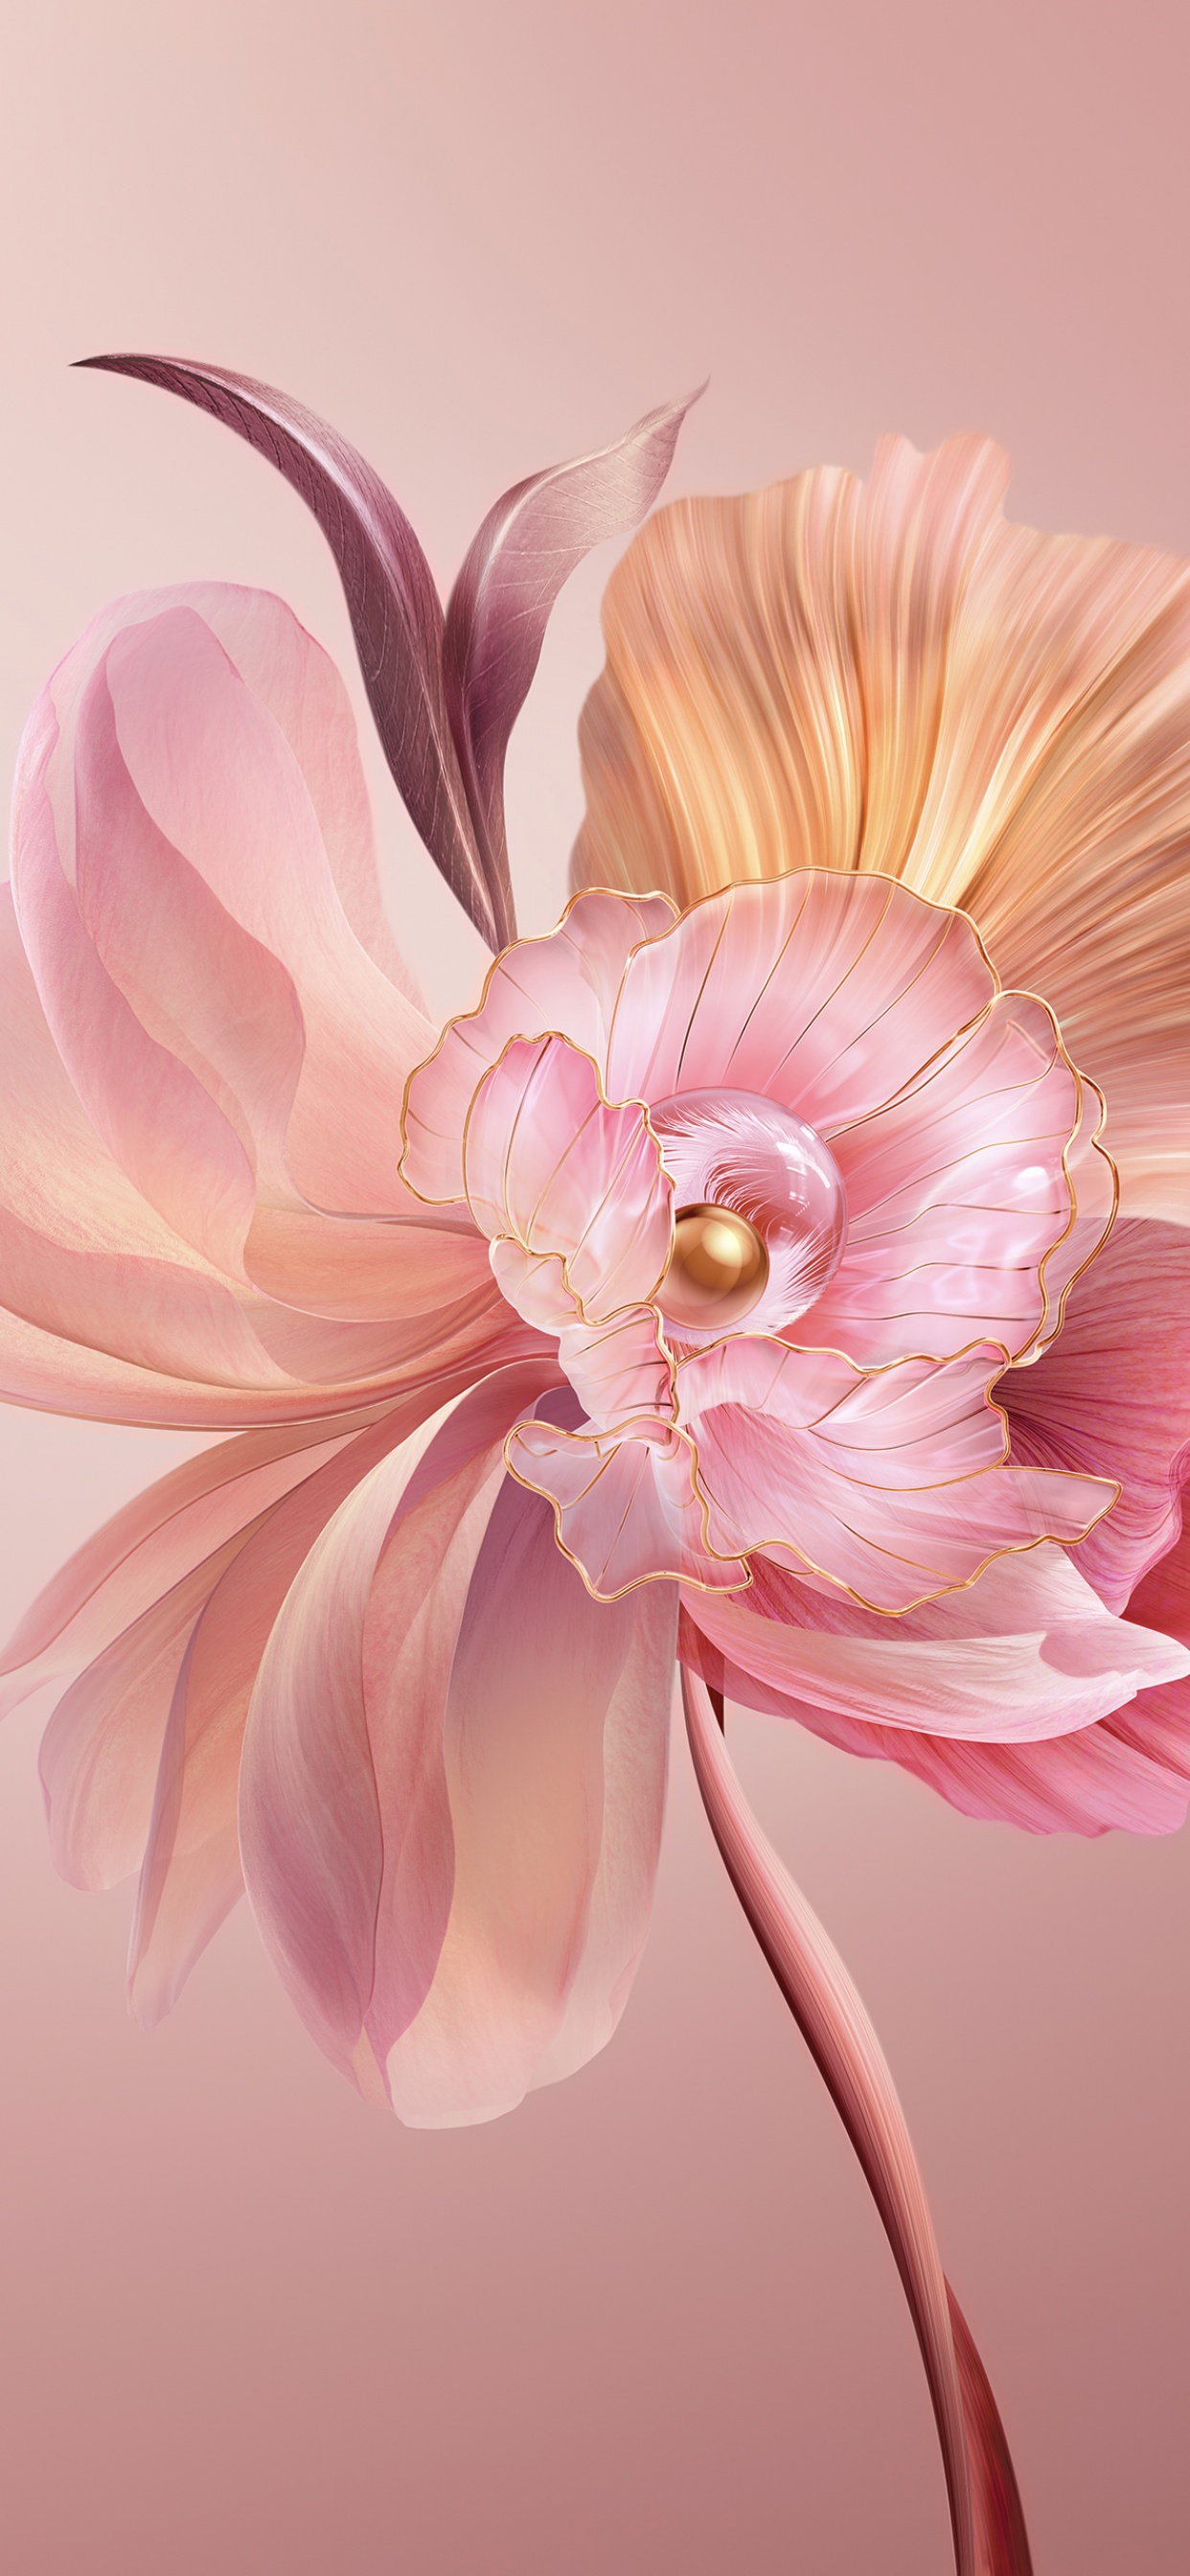 frangipani flower wallpaper